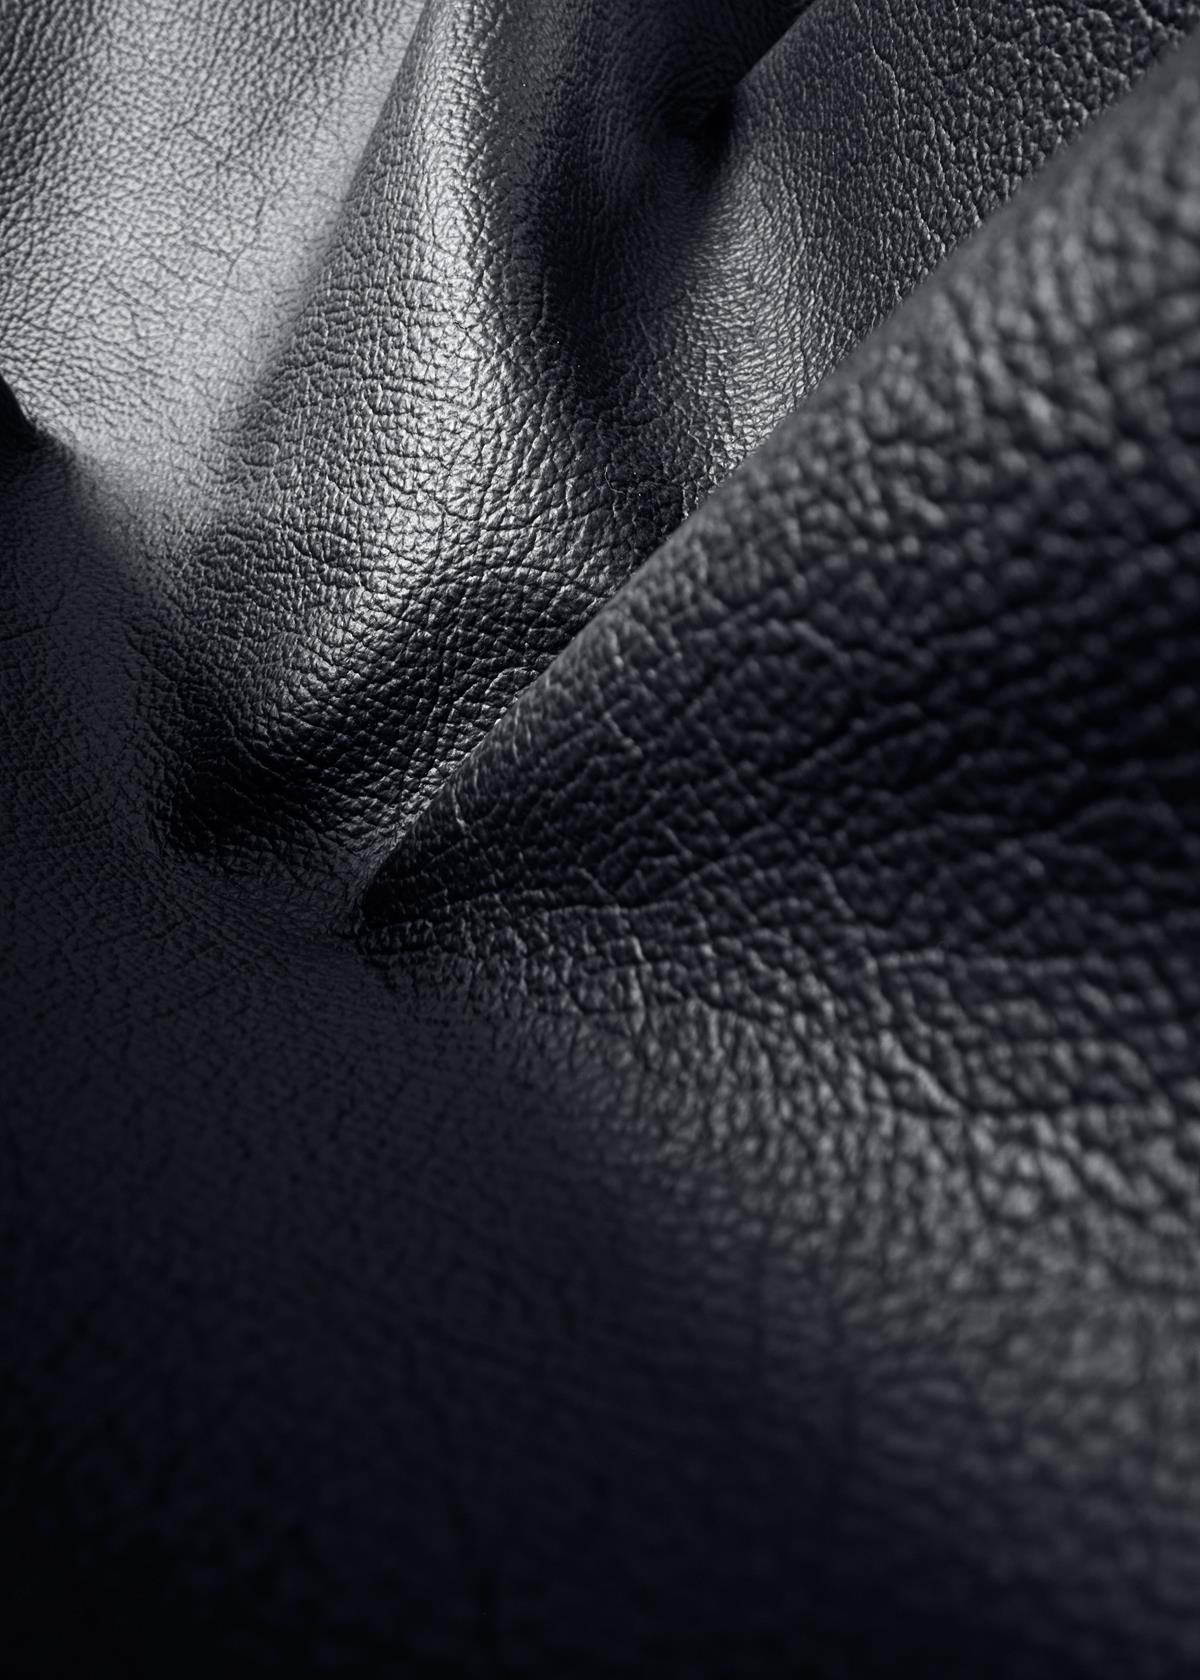 Soft Leather, GUBI (Black)